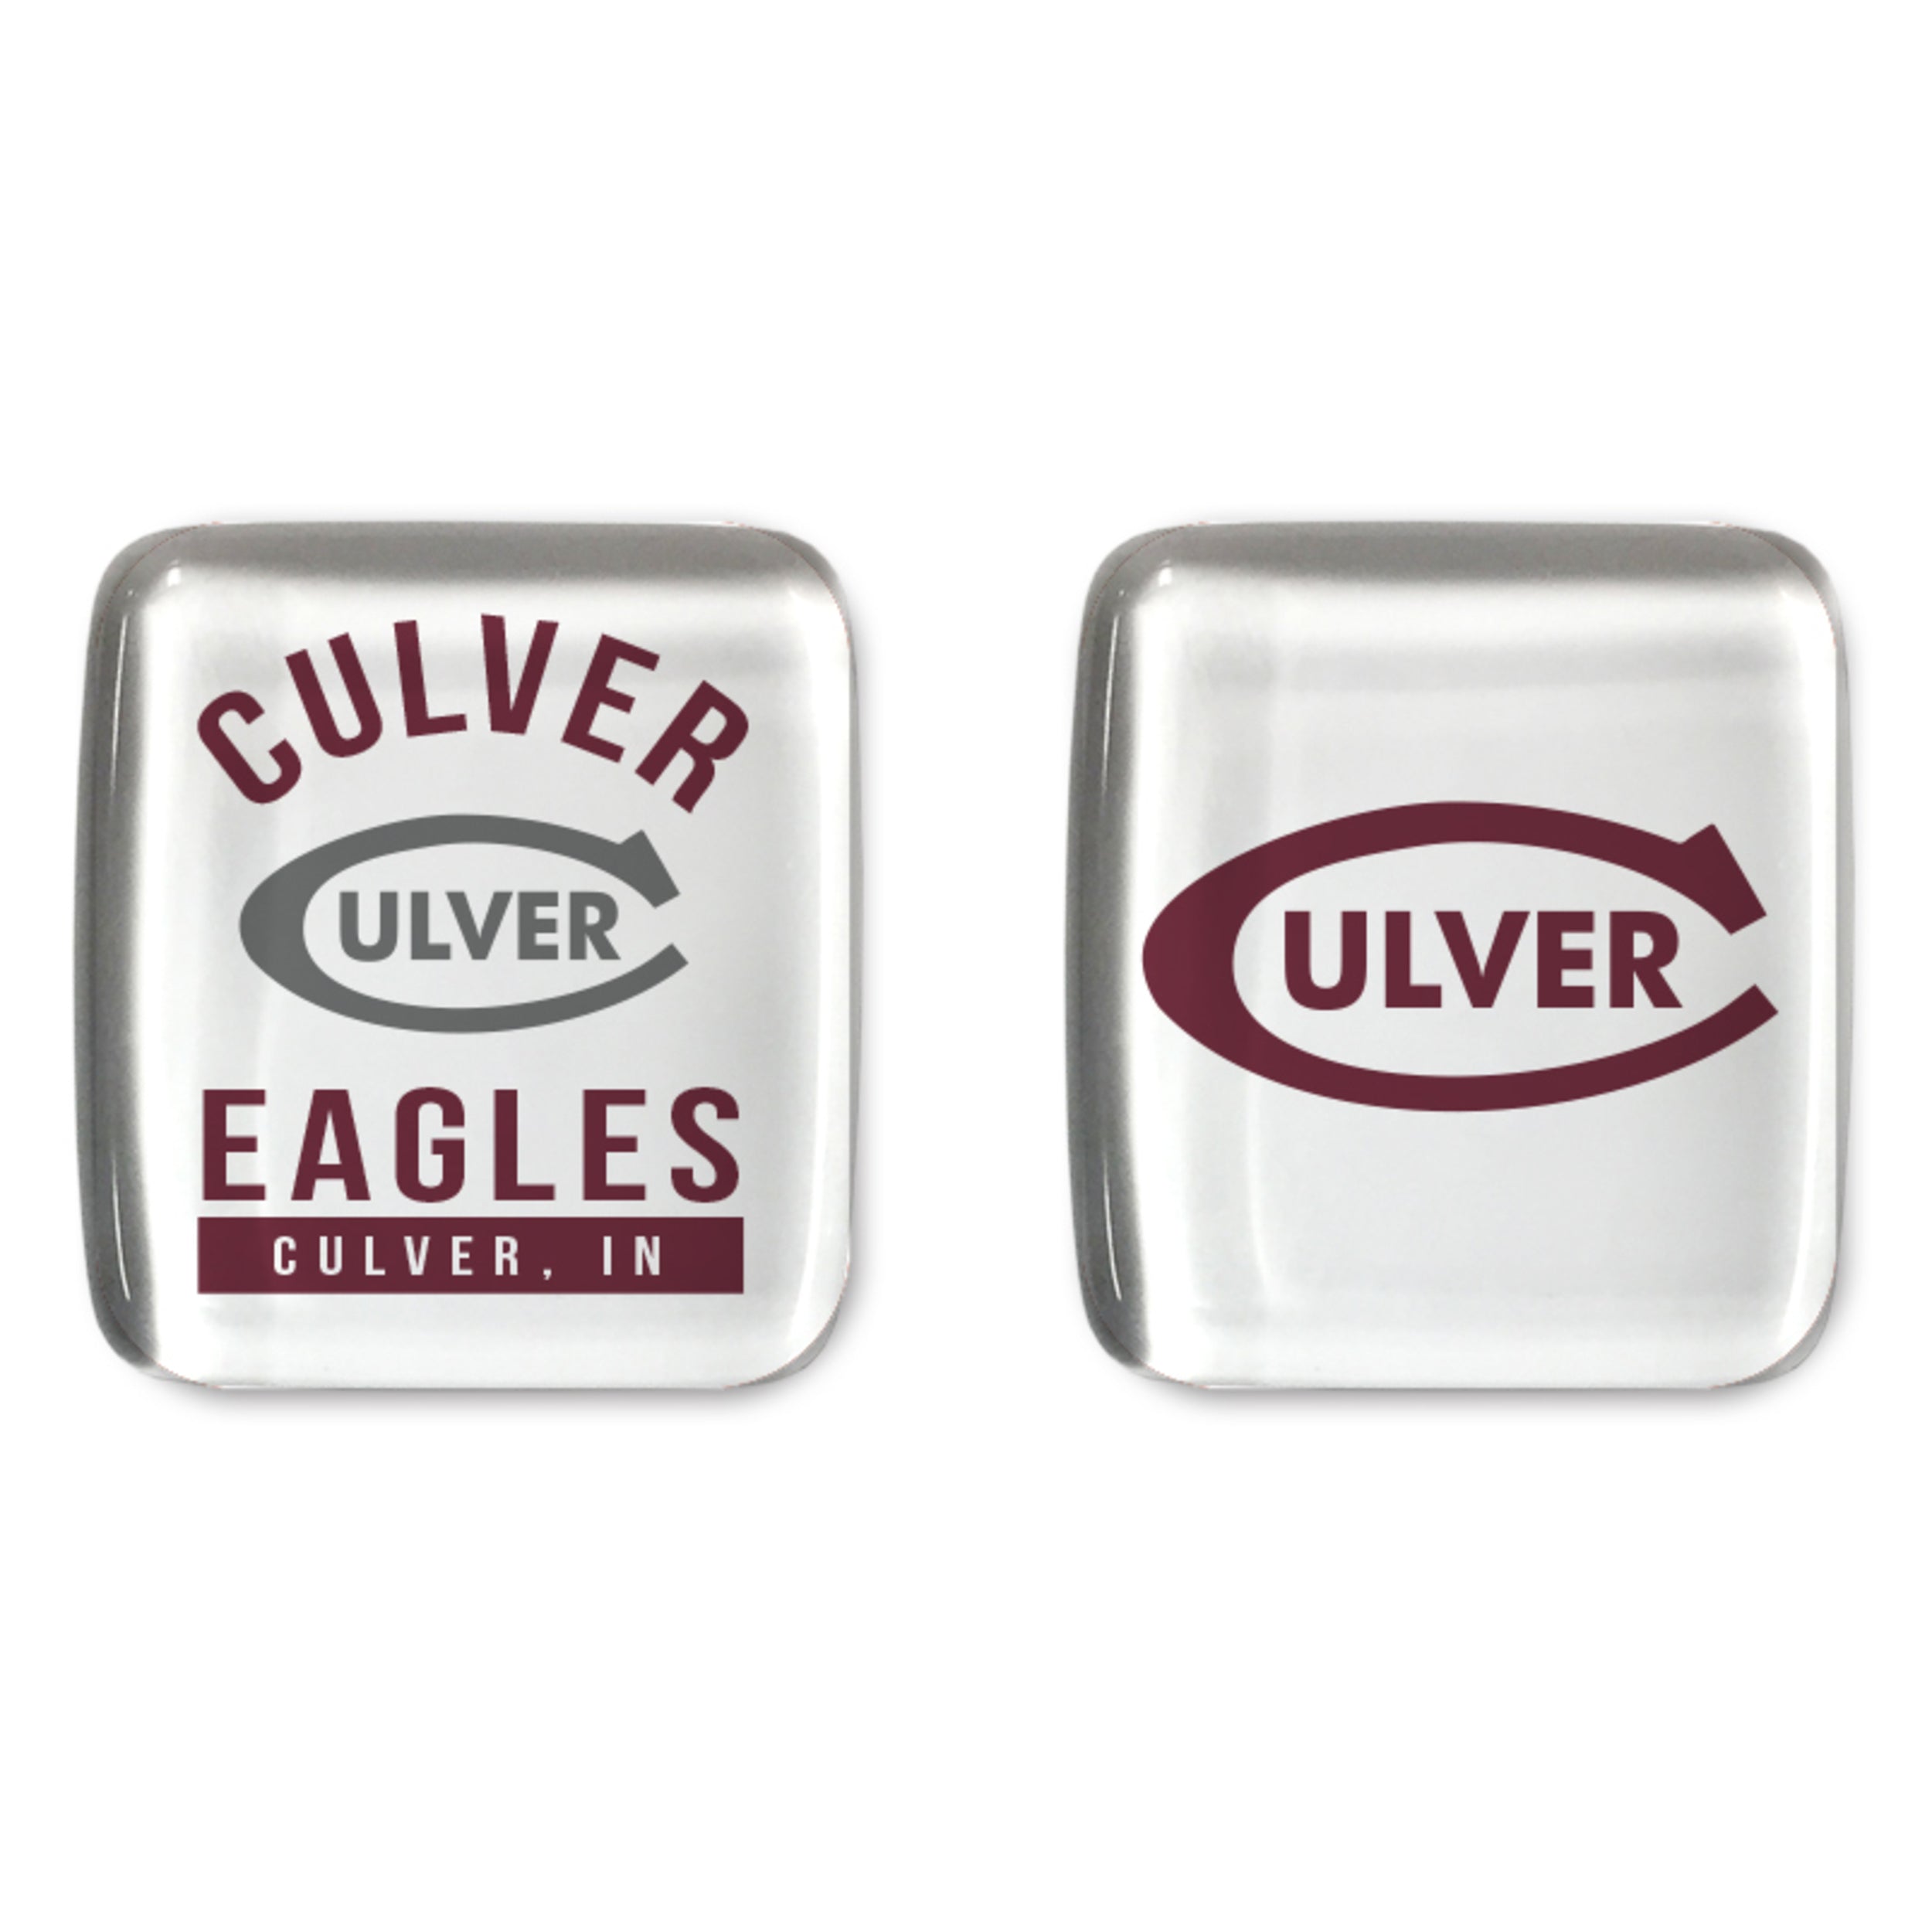 Culver Eagles Magnet - Set of 2